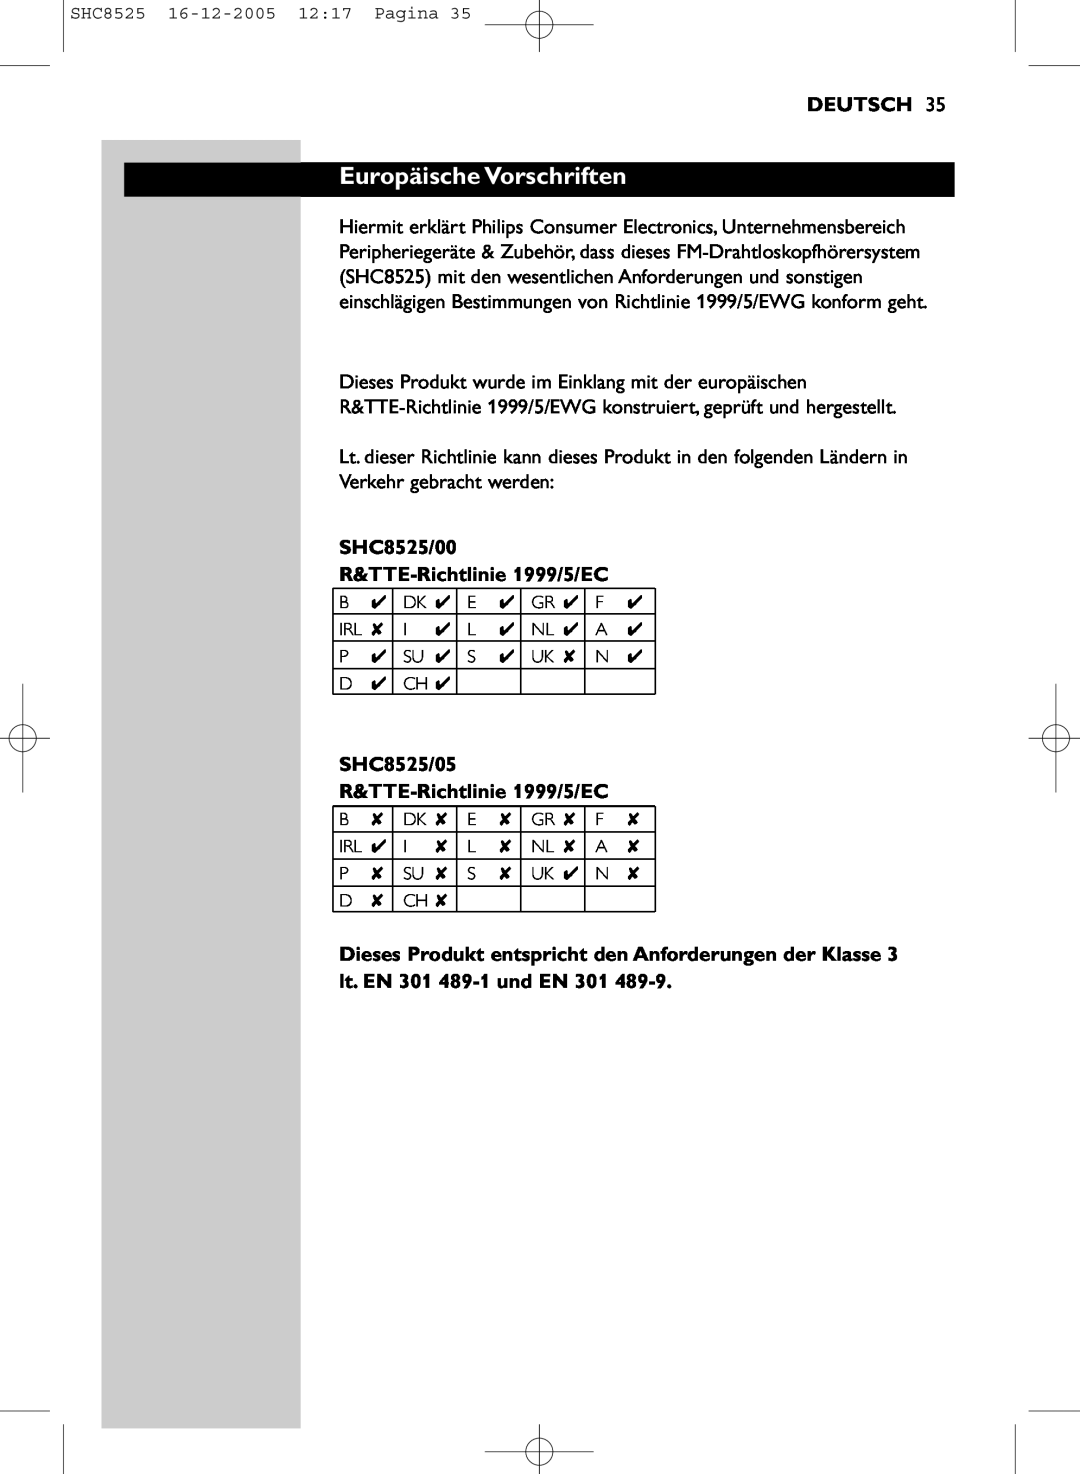 Event electronic manual Europäische Vorschriften, Deutsch, SHC8525/00 R&TTE-Richtlinie1999/5/EC 